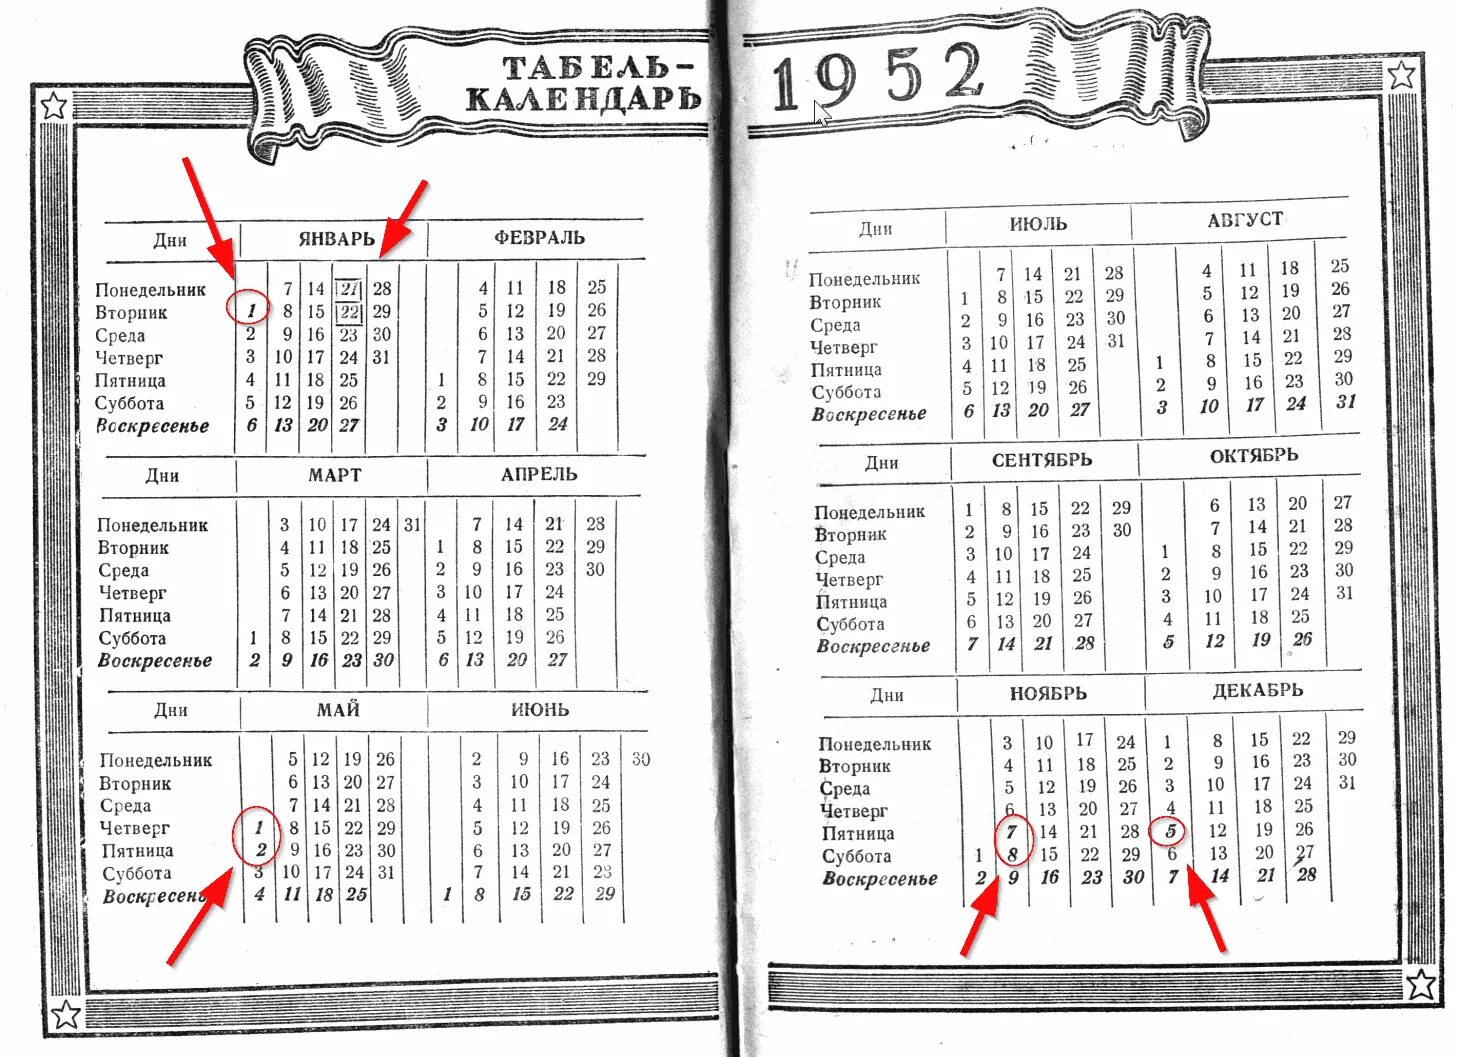 Какой день недели будет 5 октября. Календарь 1952 года. Календарь 1952 года по месяцам и дням. Табель календарь 1952.